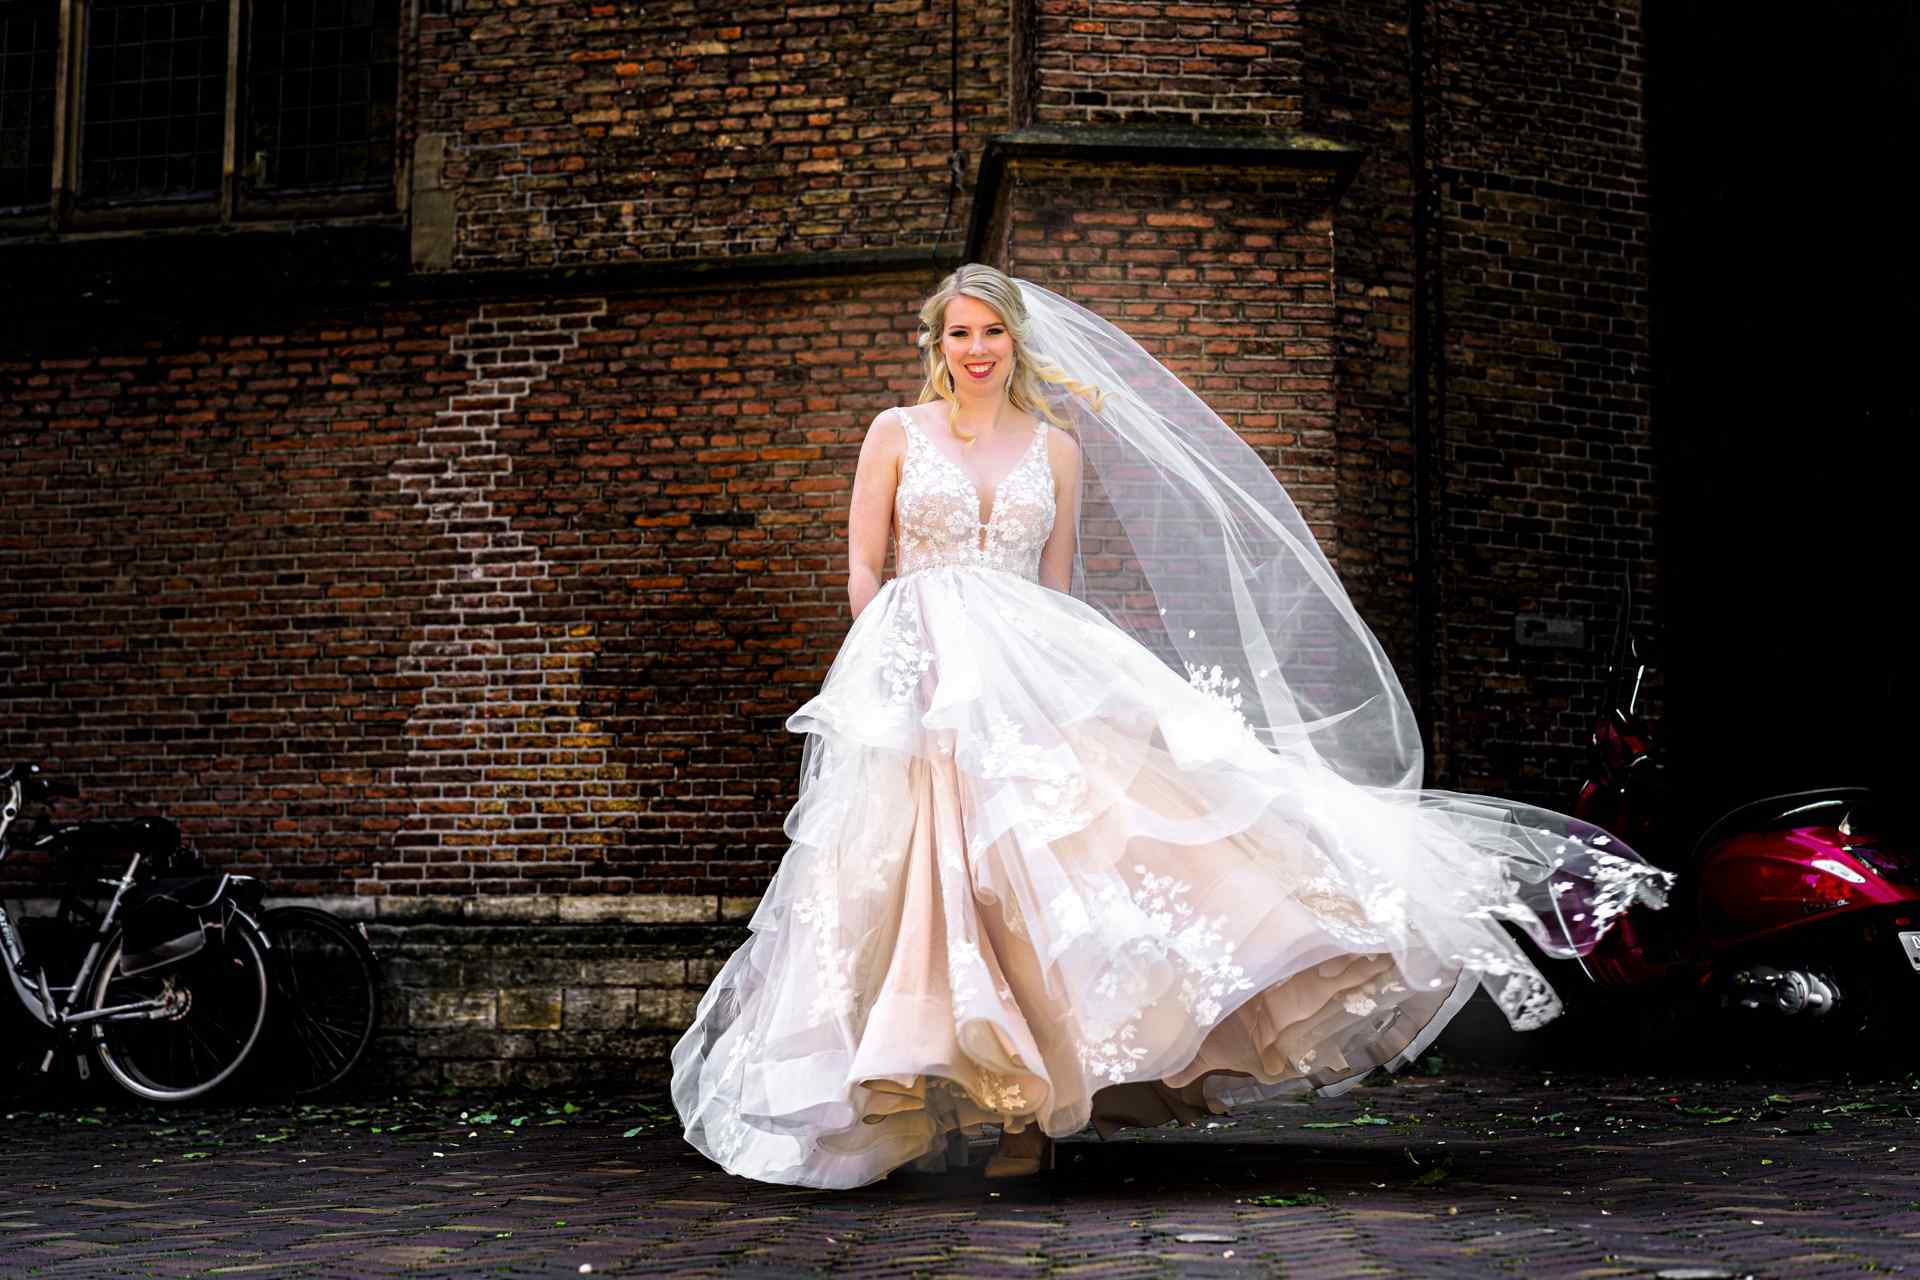 Bruid Den Haag trouwen huwelijk, bruidsfotografie door fotograaf Grietje Mesman